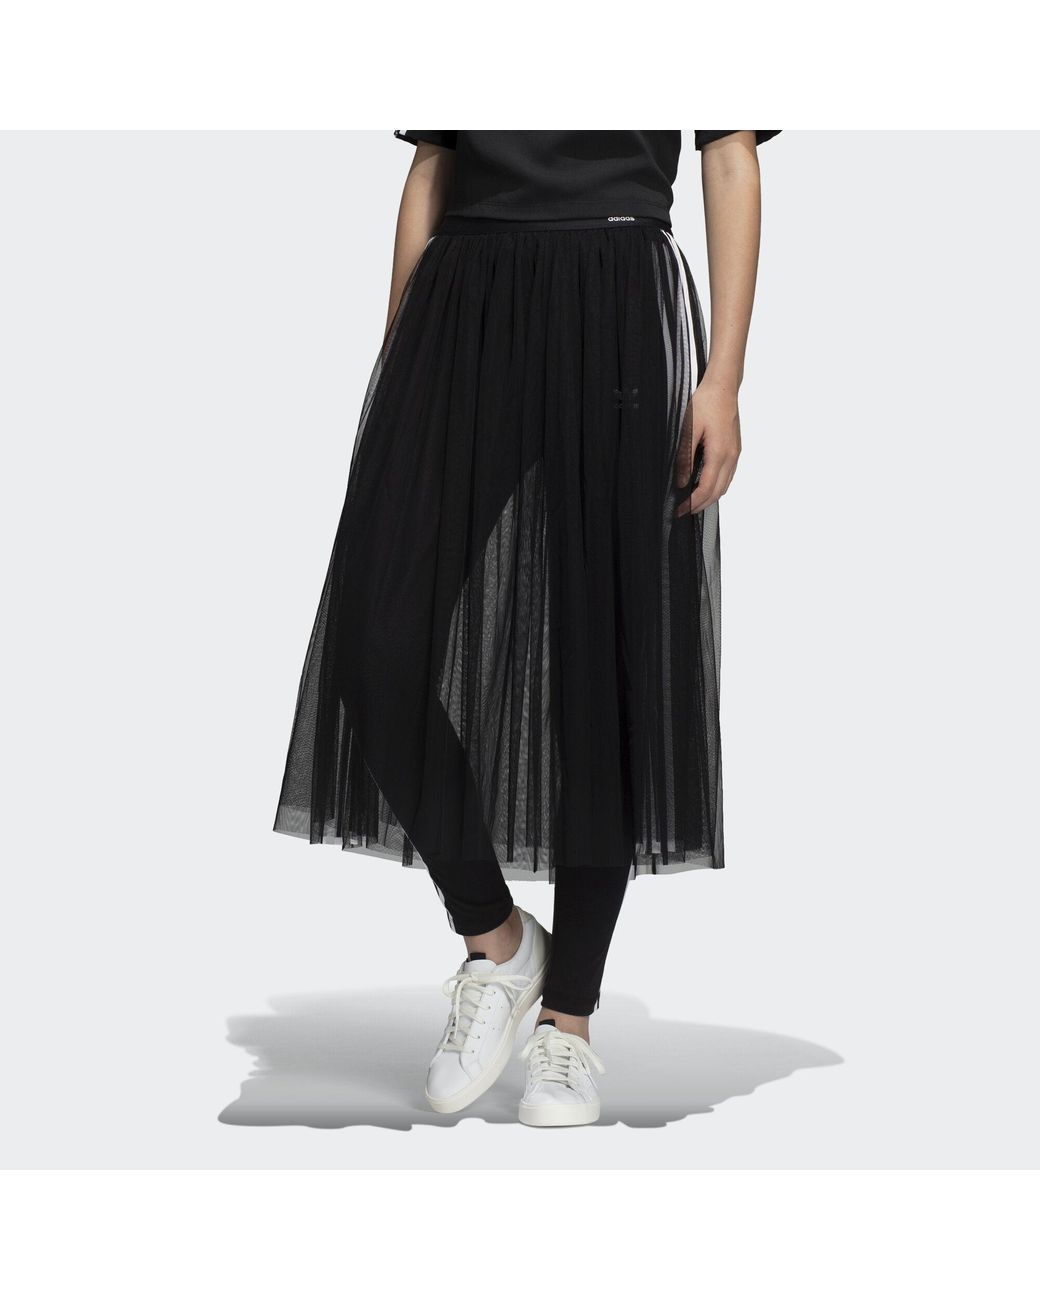 adidas Tulle Skirt in Black | Lyst UK